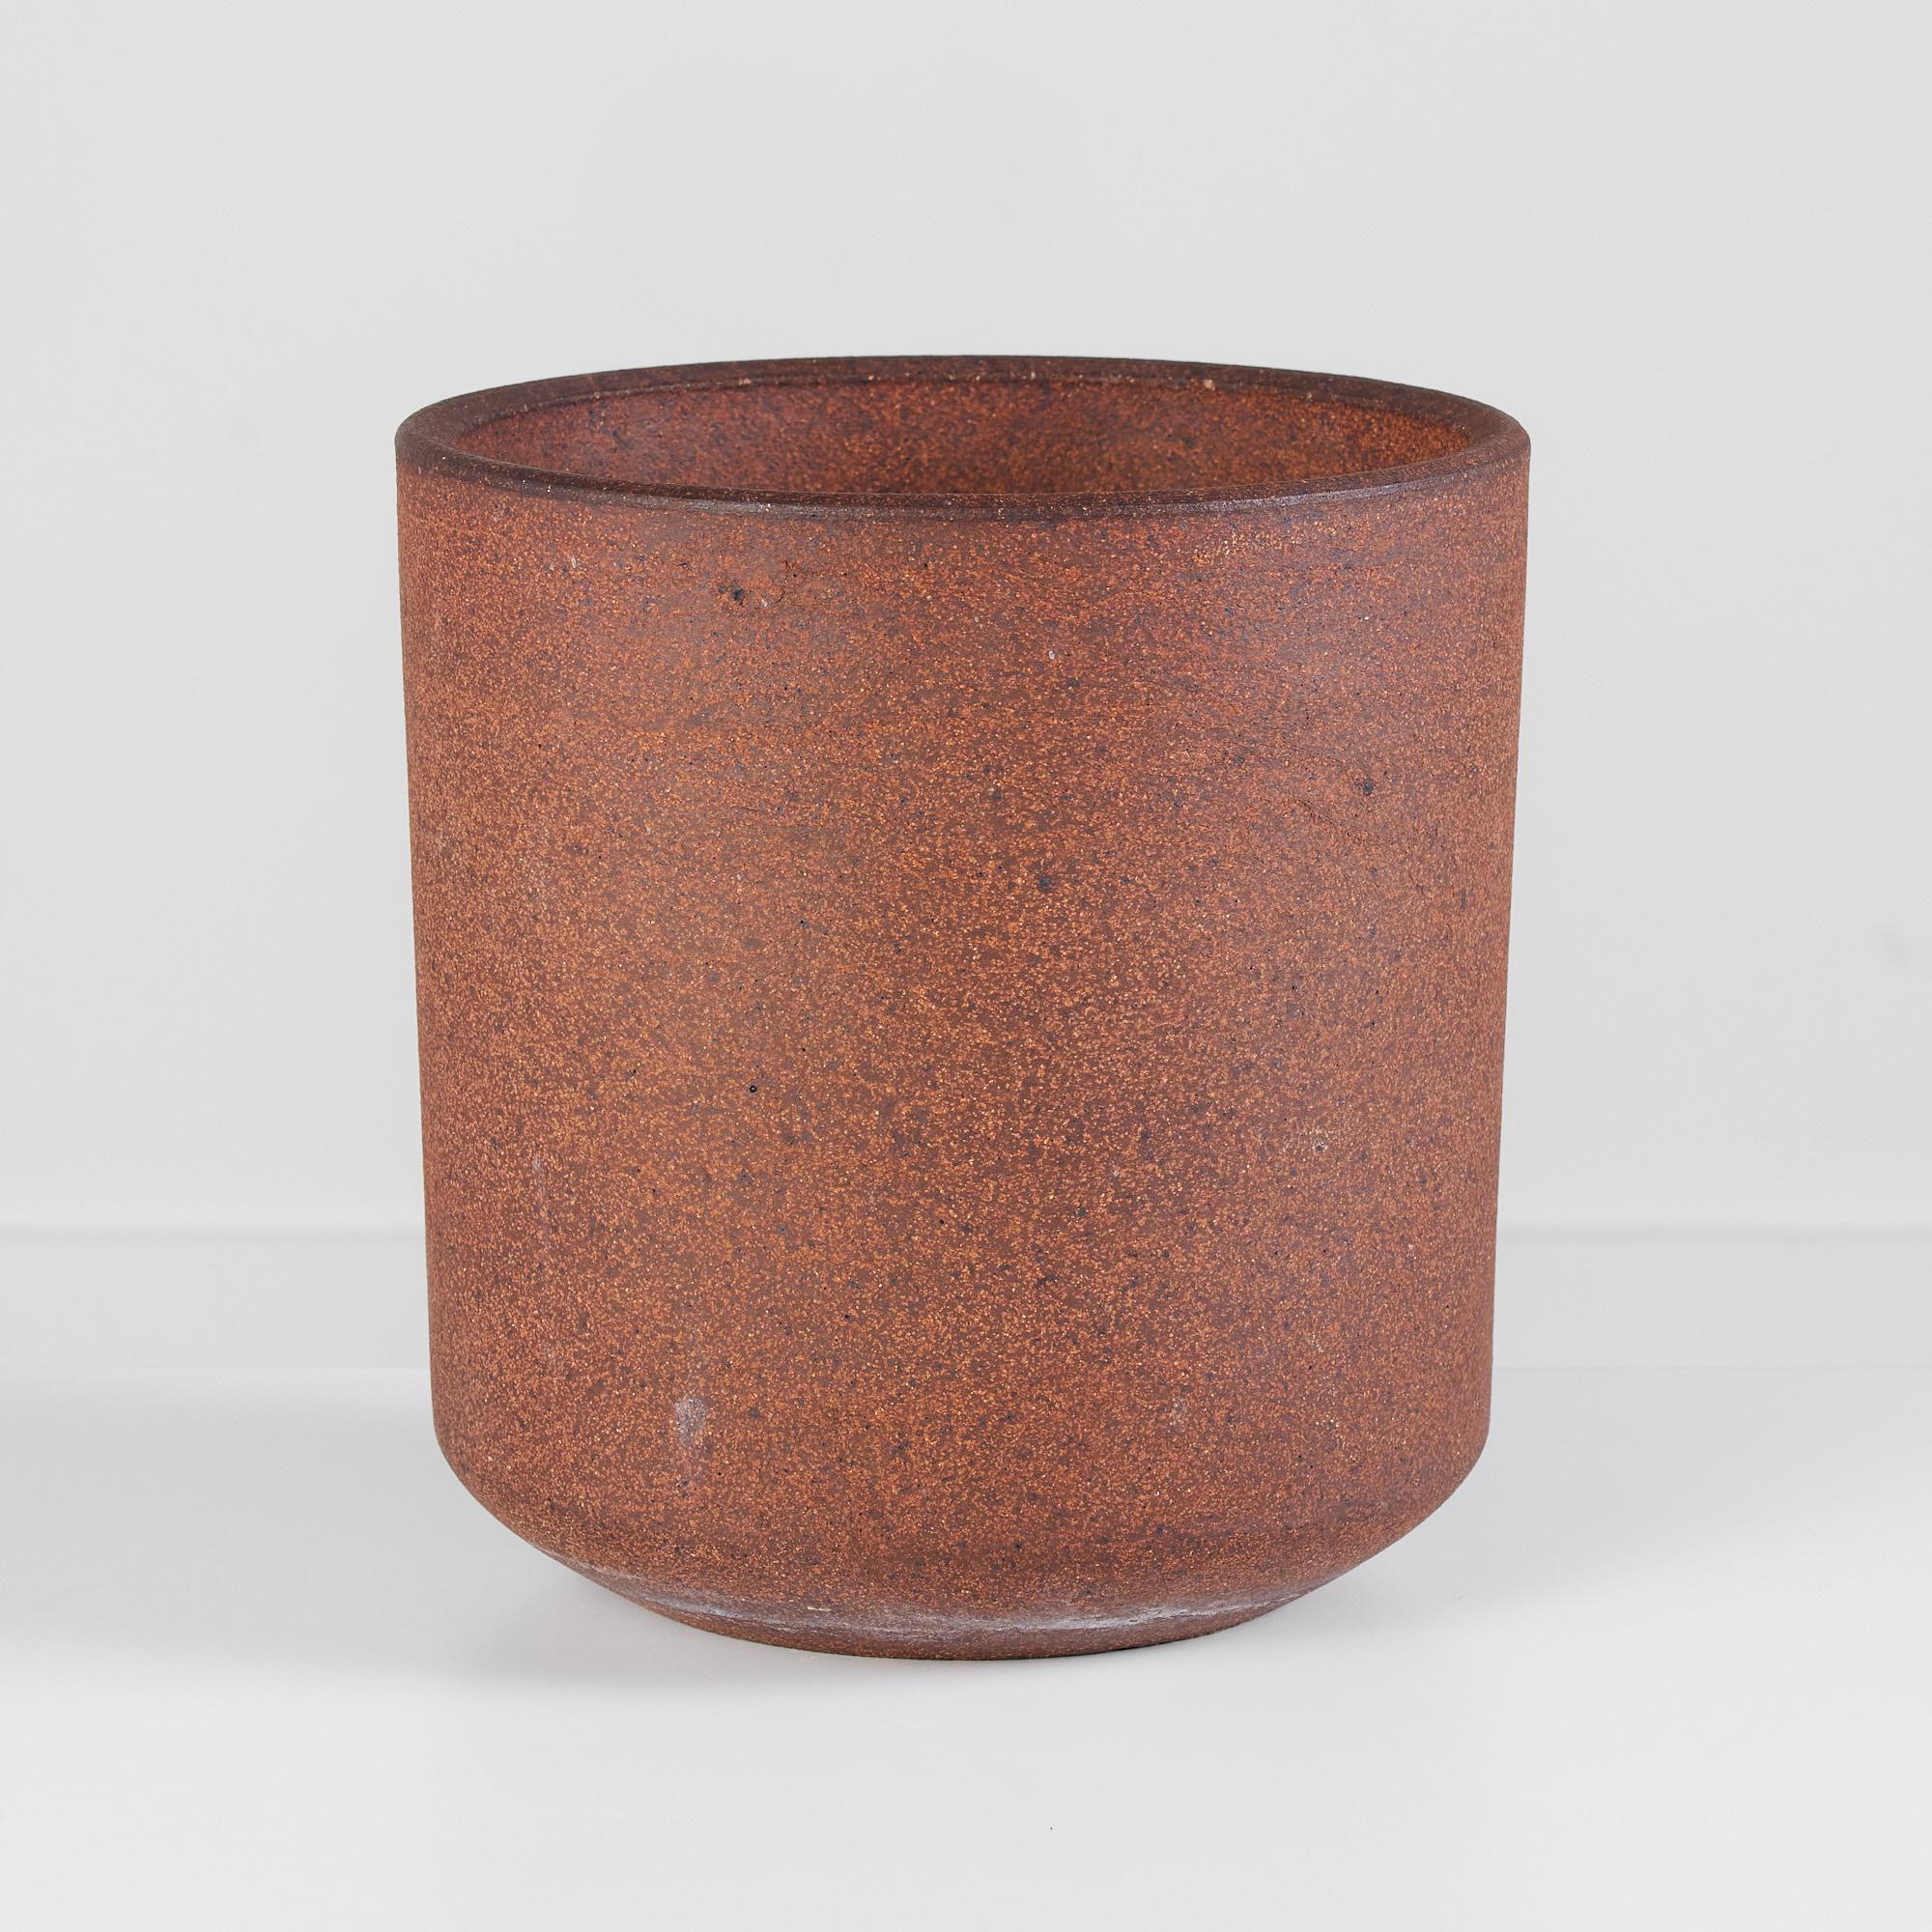 Jardinière en grès non émaillé Lagardo Tackett pour Architectural Pottery. Cet exemple cylindrique est légèrement texturé avec un intérieur et un extérieur mouchetés.

Dimensions : 10.25